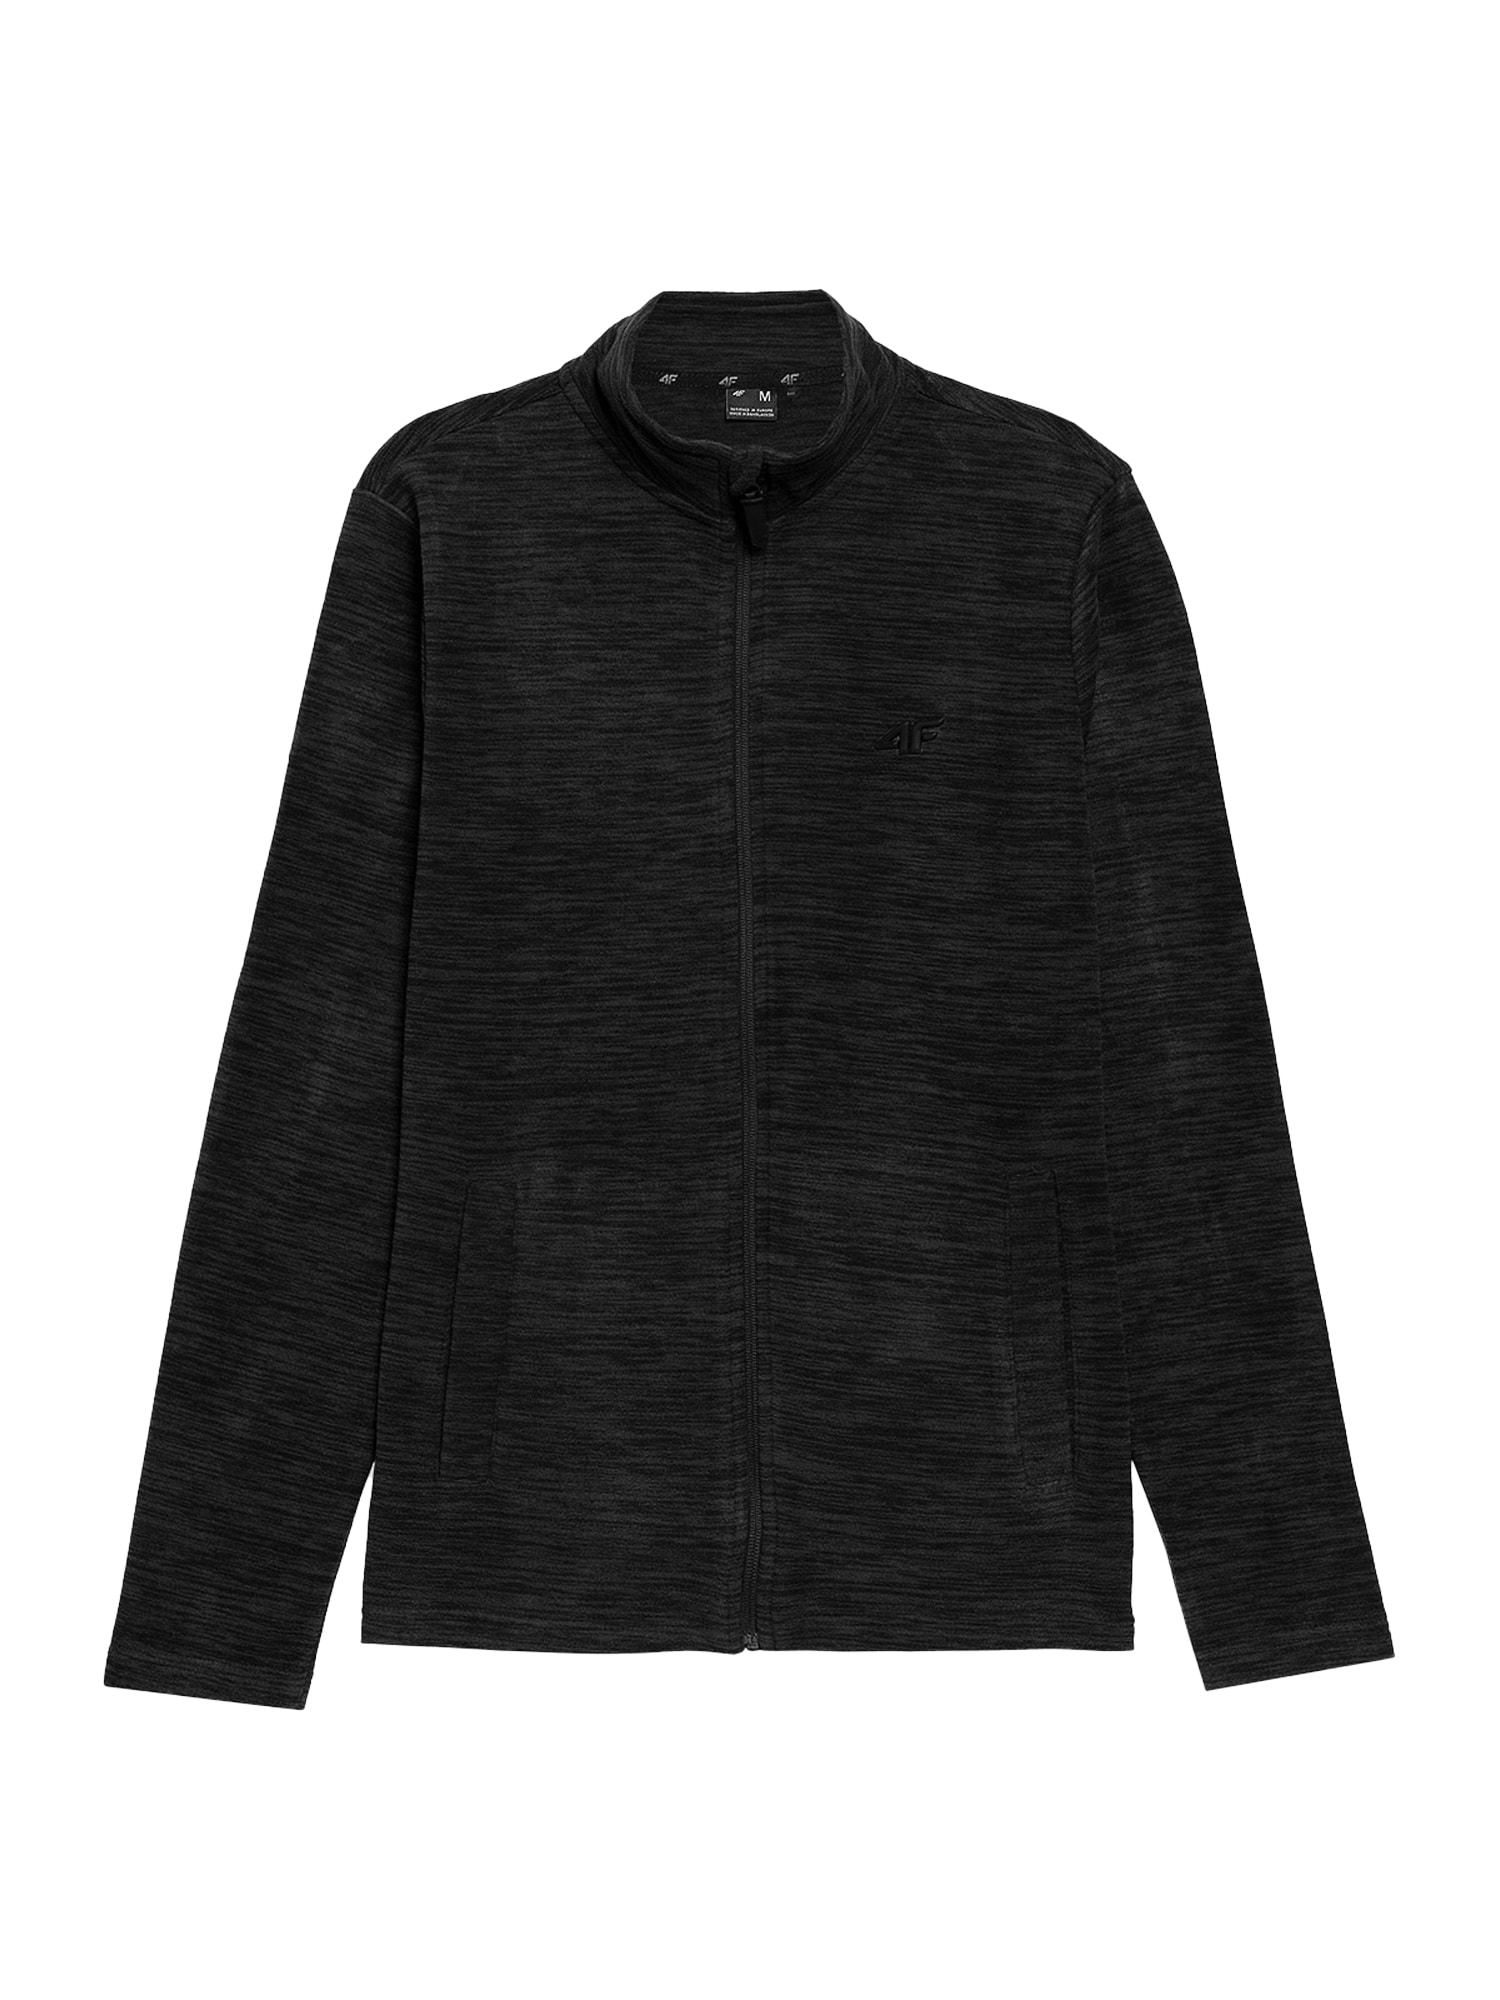 4F Jachetă  fleece funcțională  negru amestecat